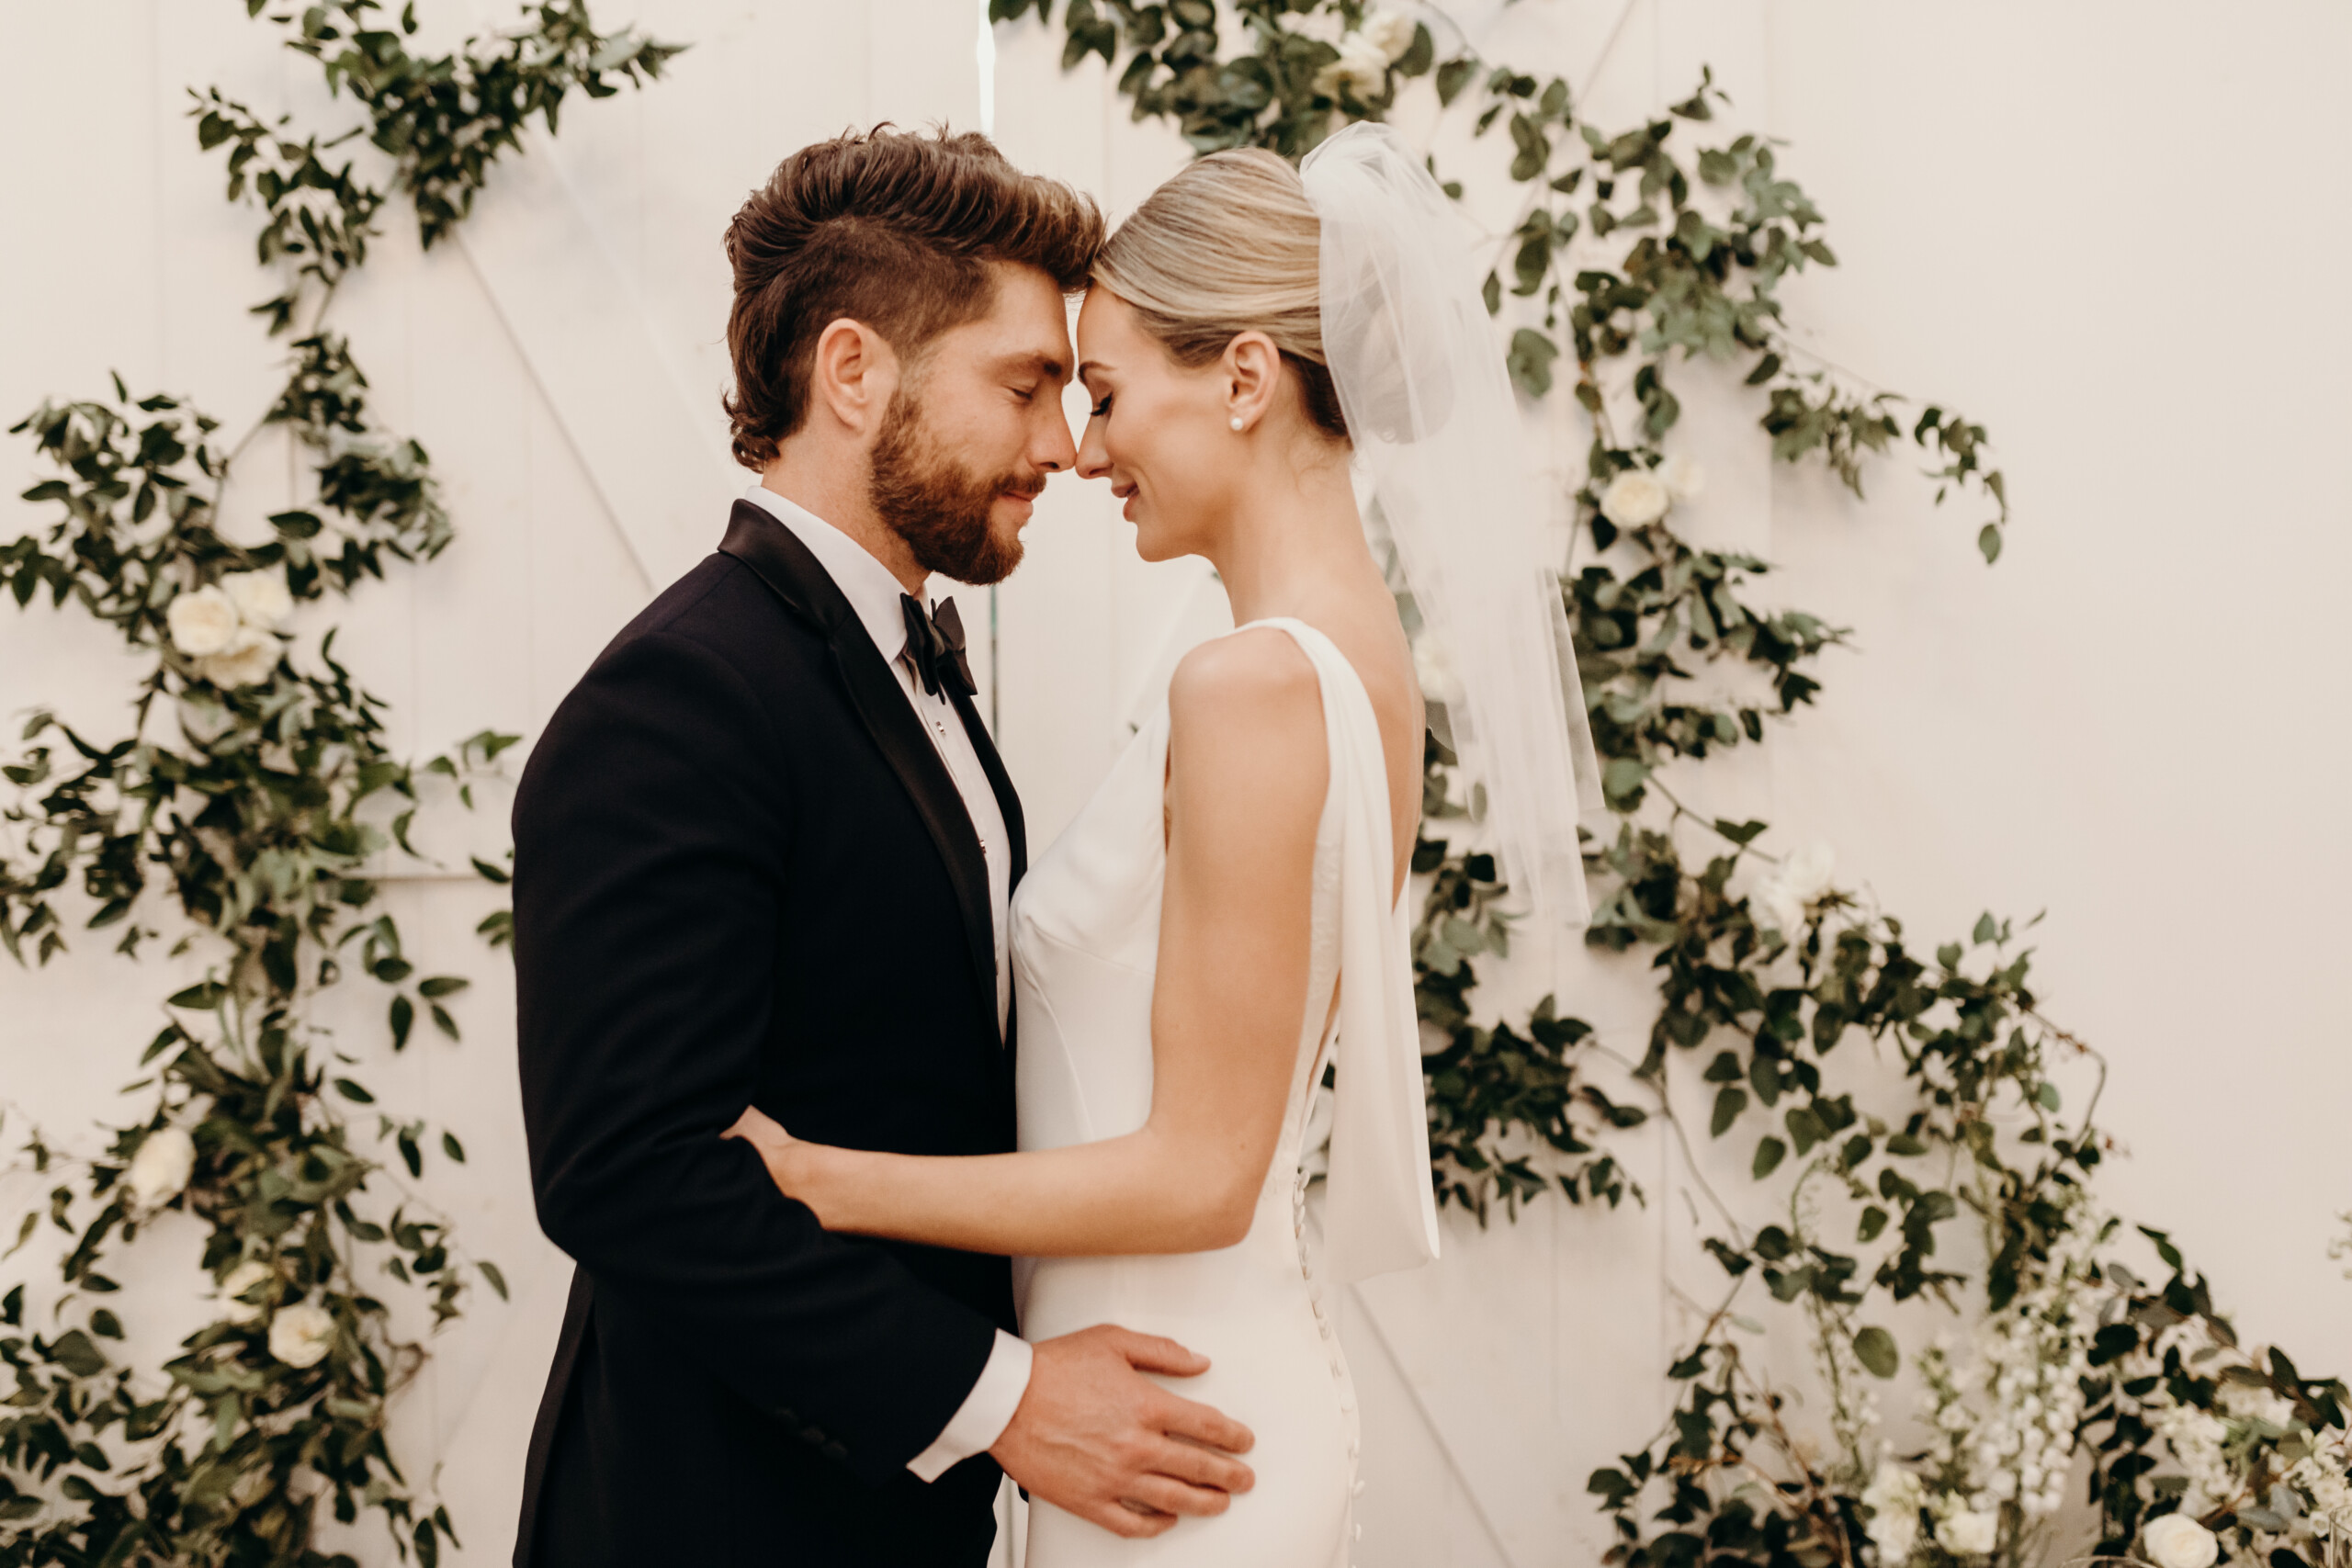 Lauren Bushnell and Chris Lane’s Wedding at 14TENN